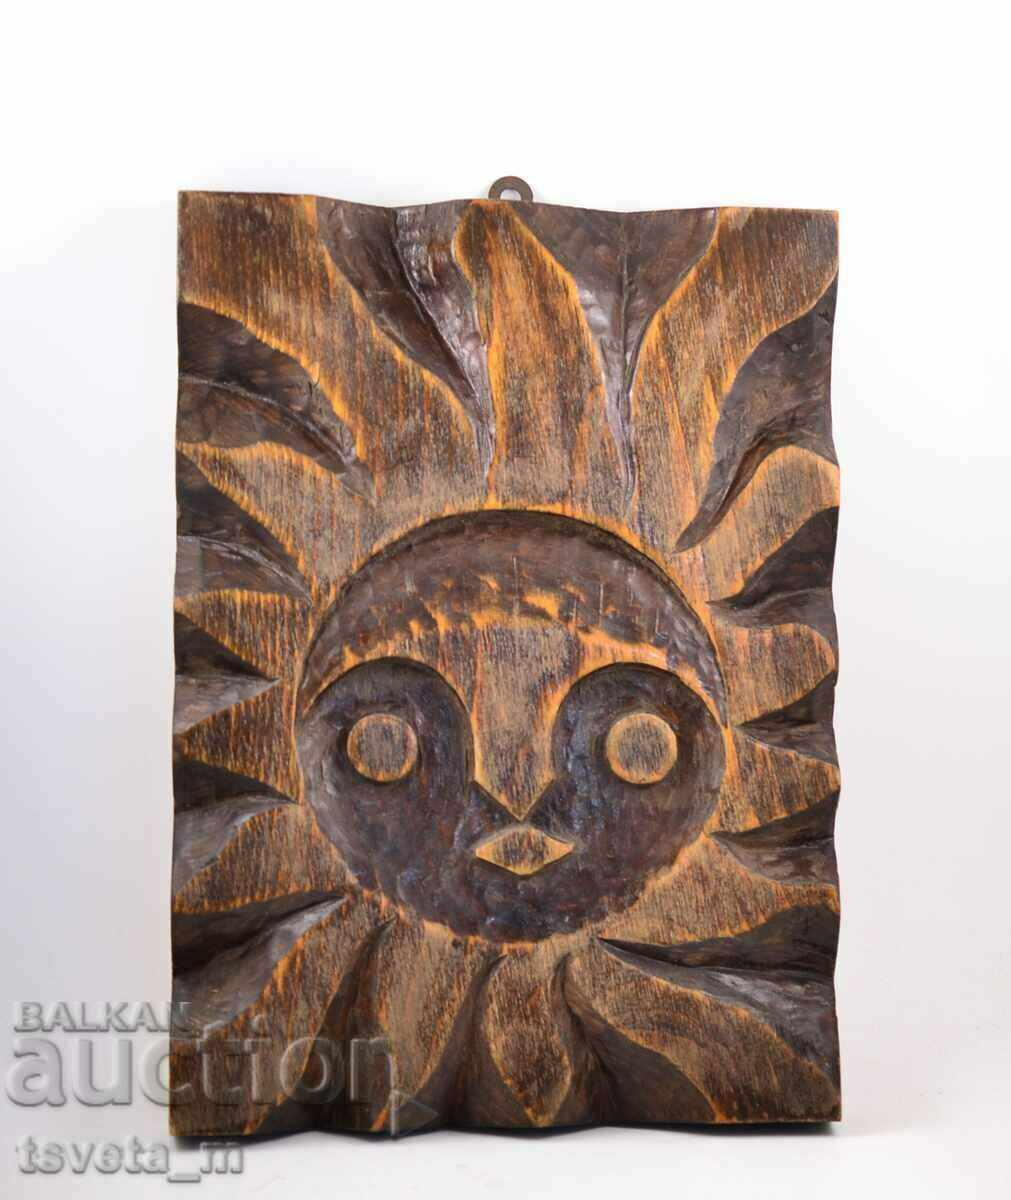 Sculptura in lemn "SUN" lucrata manual, decor de perete